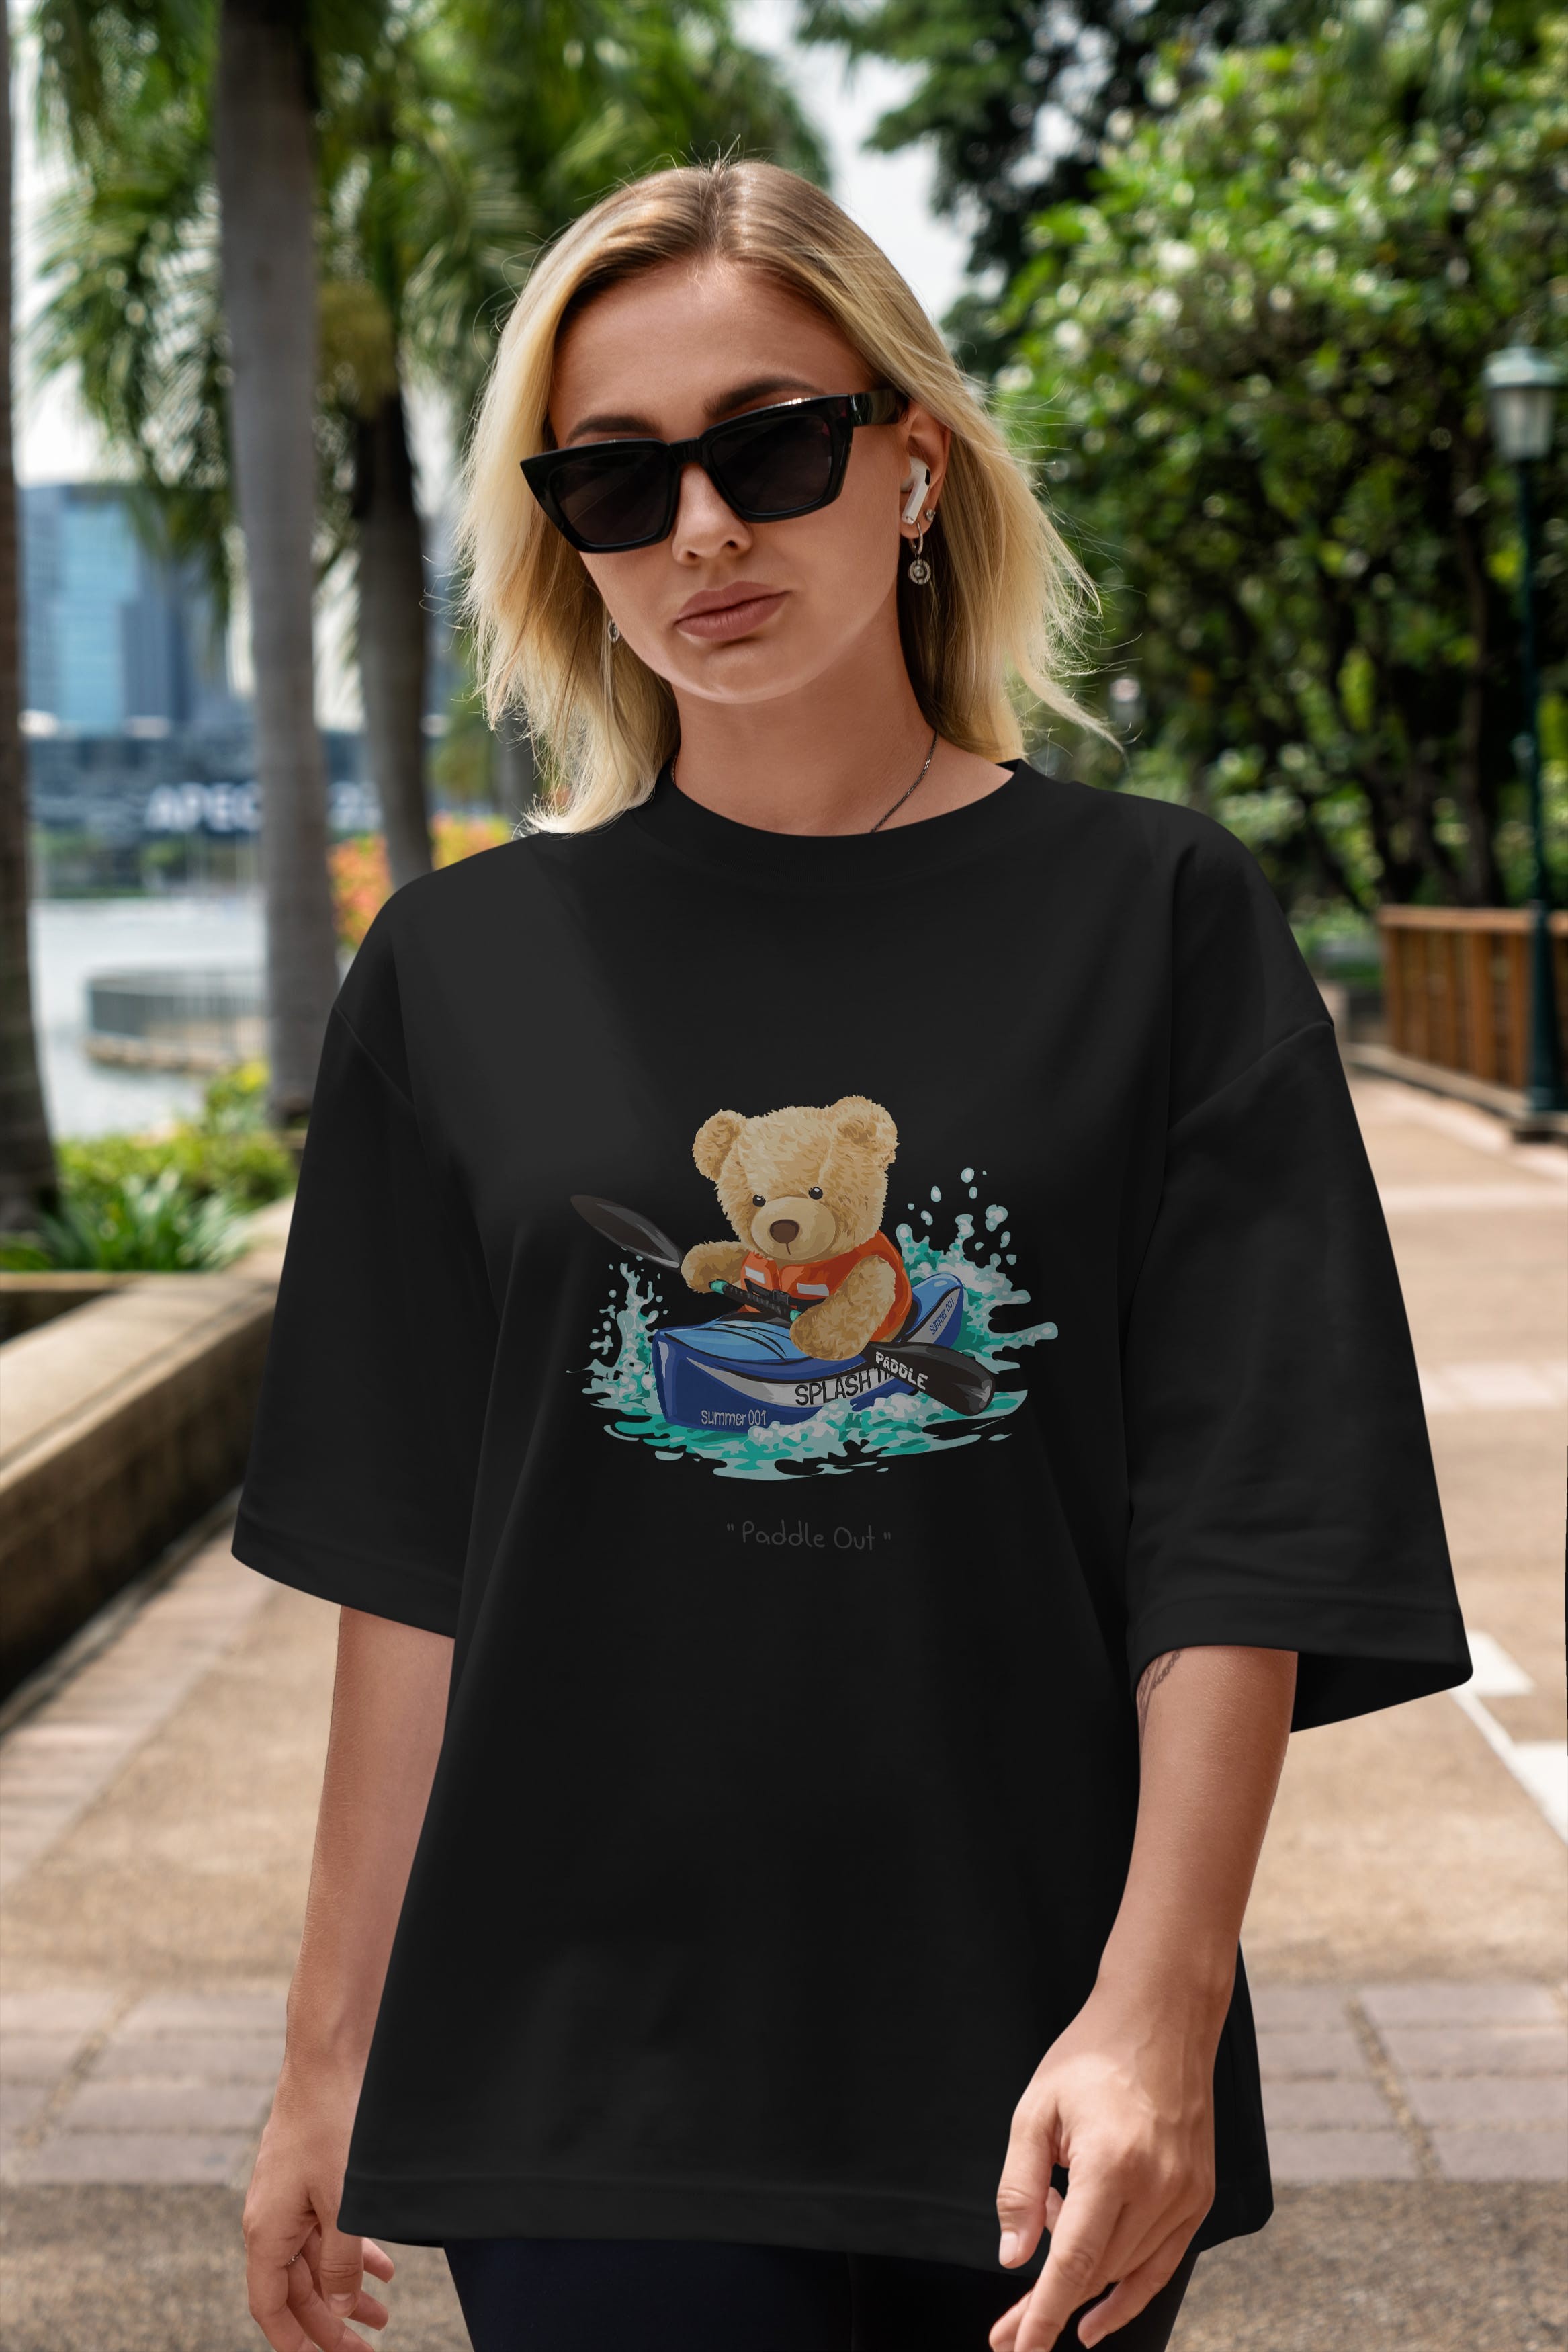 Teddy Bear Paddle Out Ön Baskılı Oversize t-shirt Erkek Kadın Unisex %100 Pamuk